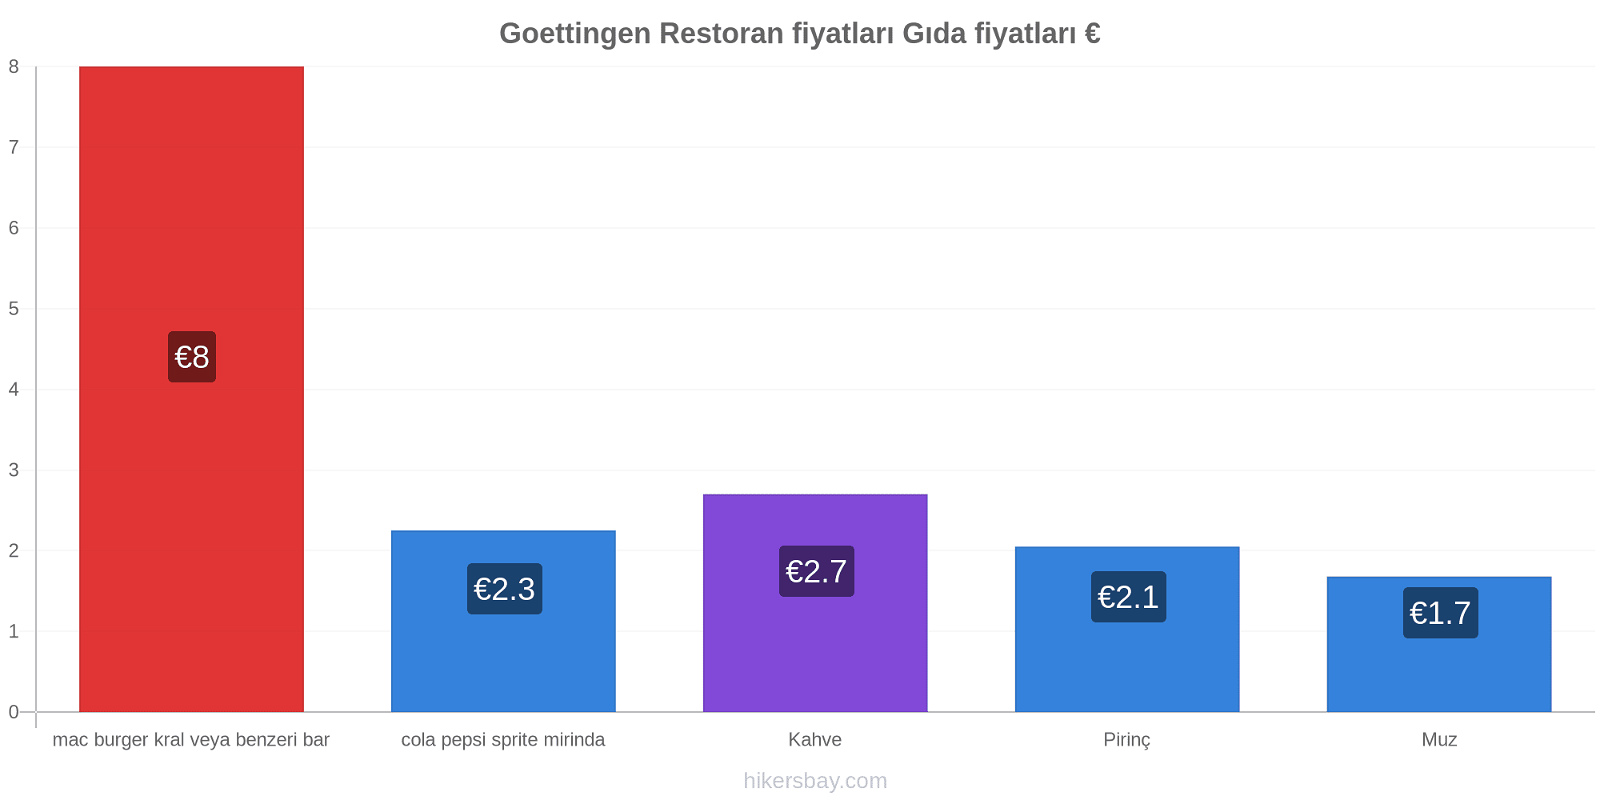 Goettingen fiyat değişiklikleri hikersbay.com